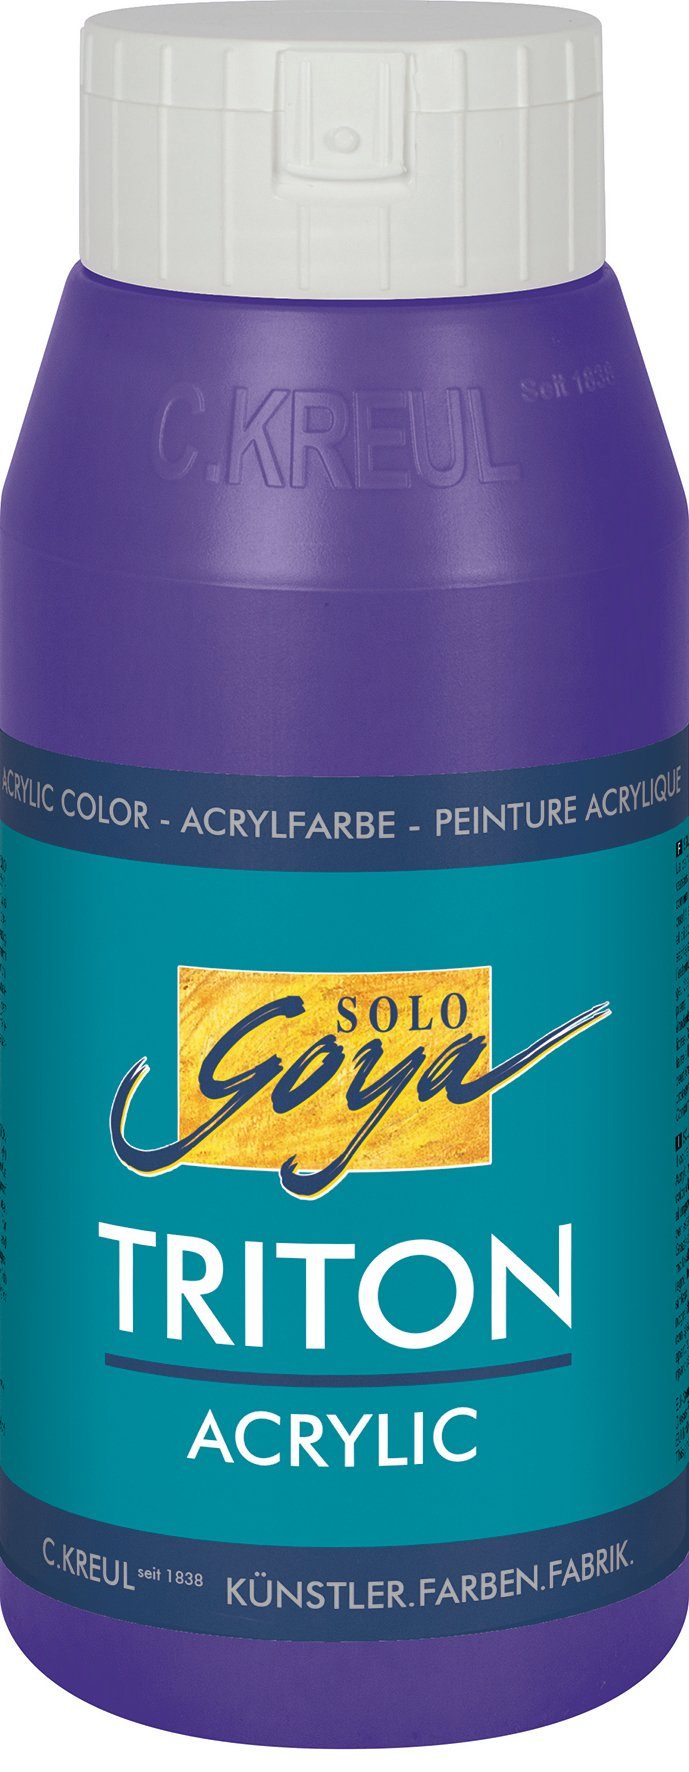 Acrylfarbe Violett Triton Solo 750 ml Kreul Goya Acrylic,